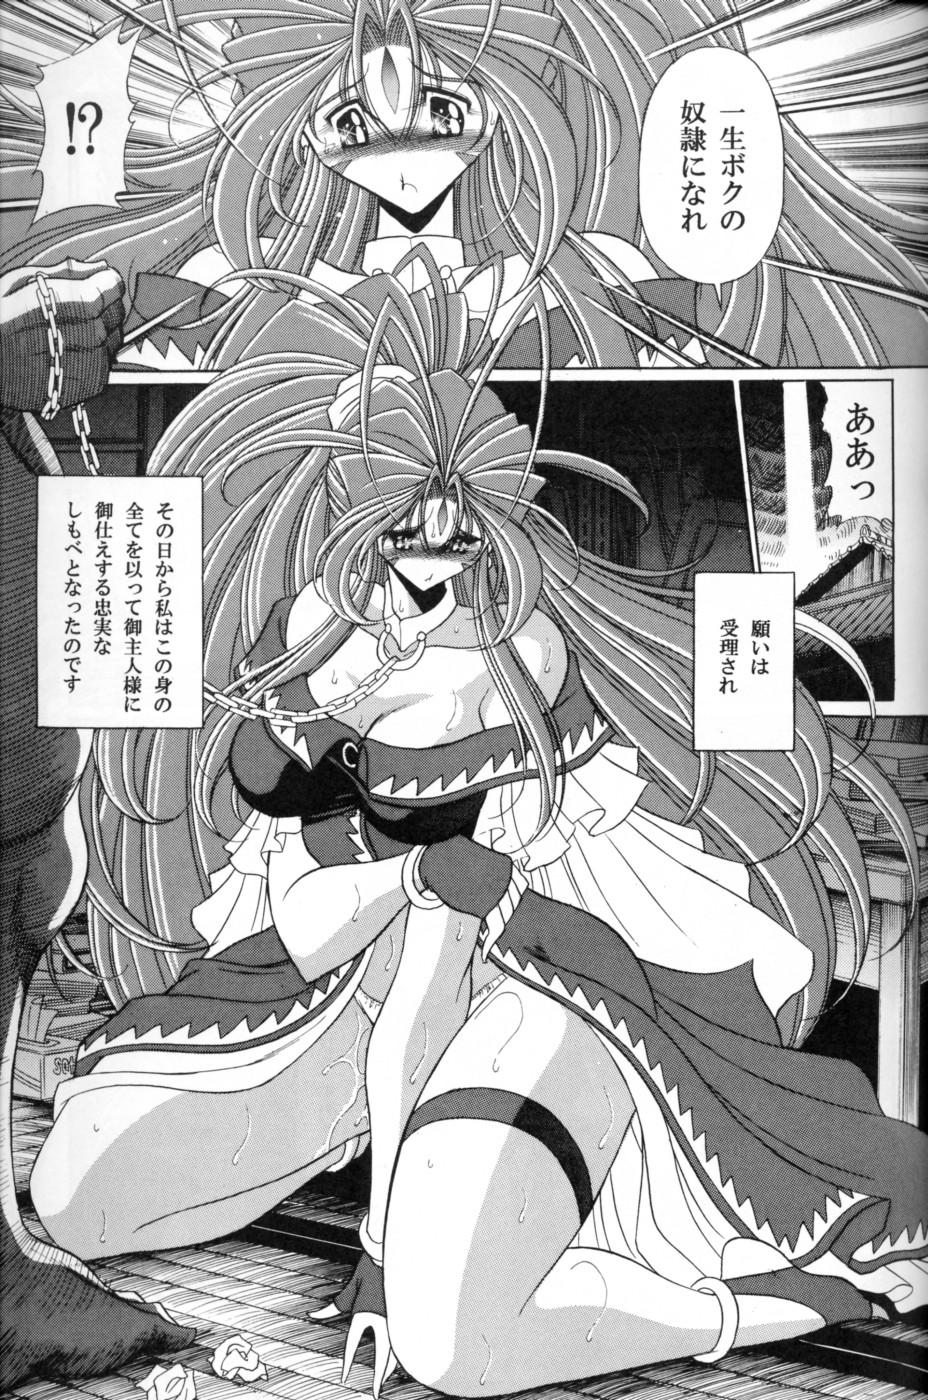 Russian Megami no Ana - Ah my goddess Gaysex - Page 7